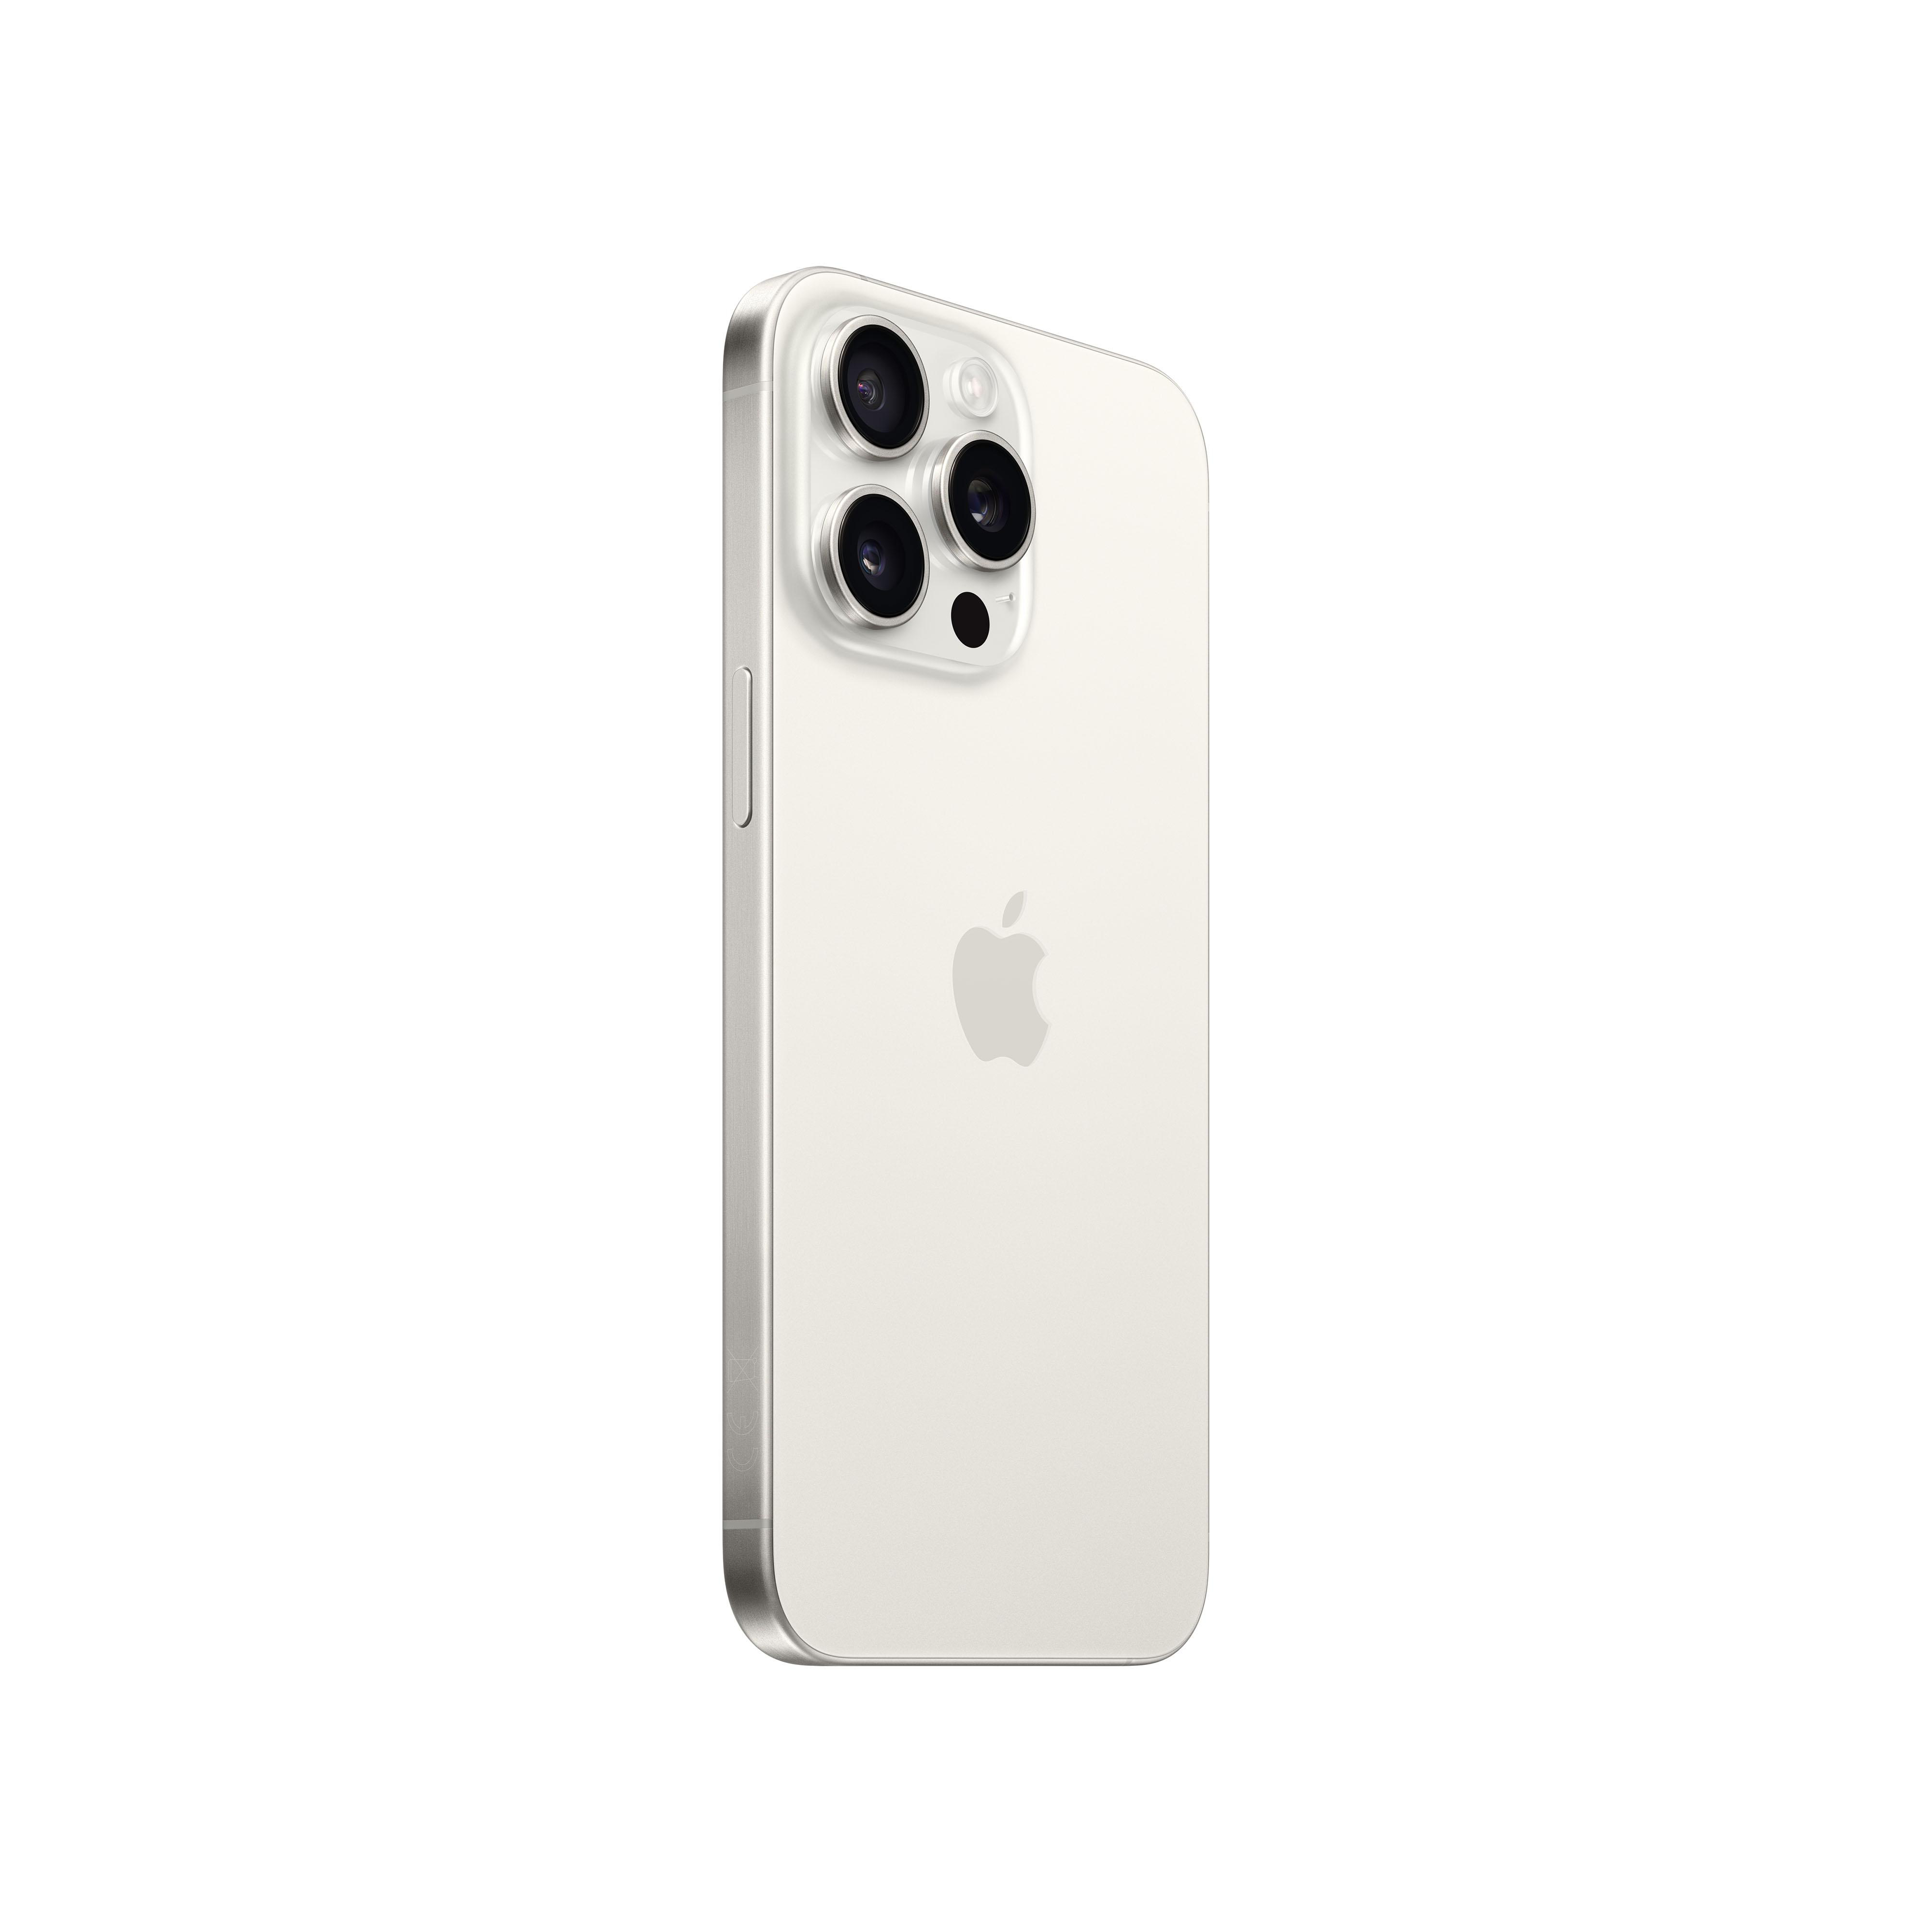 5G 15 iPhone Dual TB Titan Max SIM 1 Pro Weiß APPLE